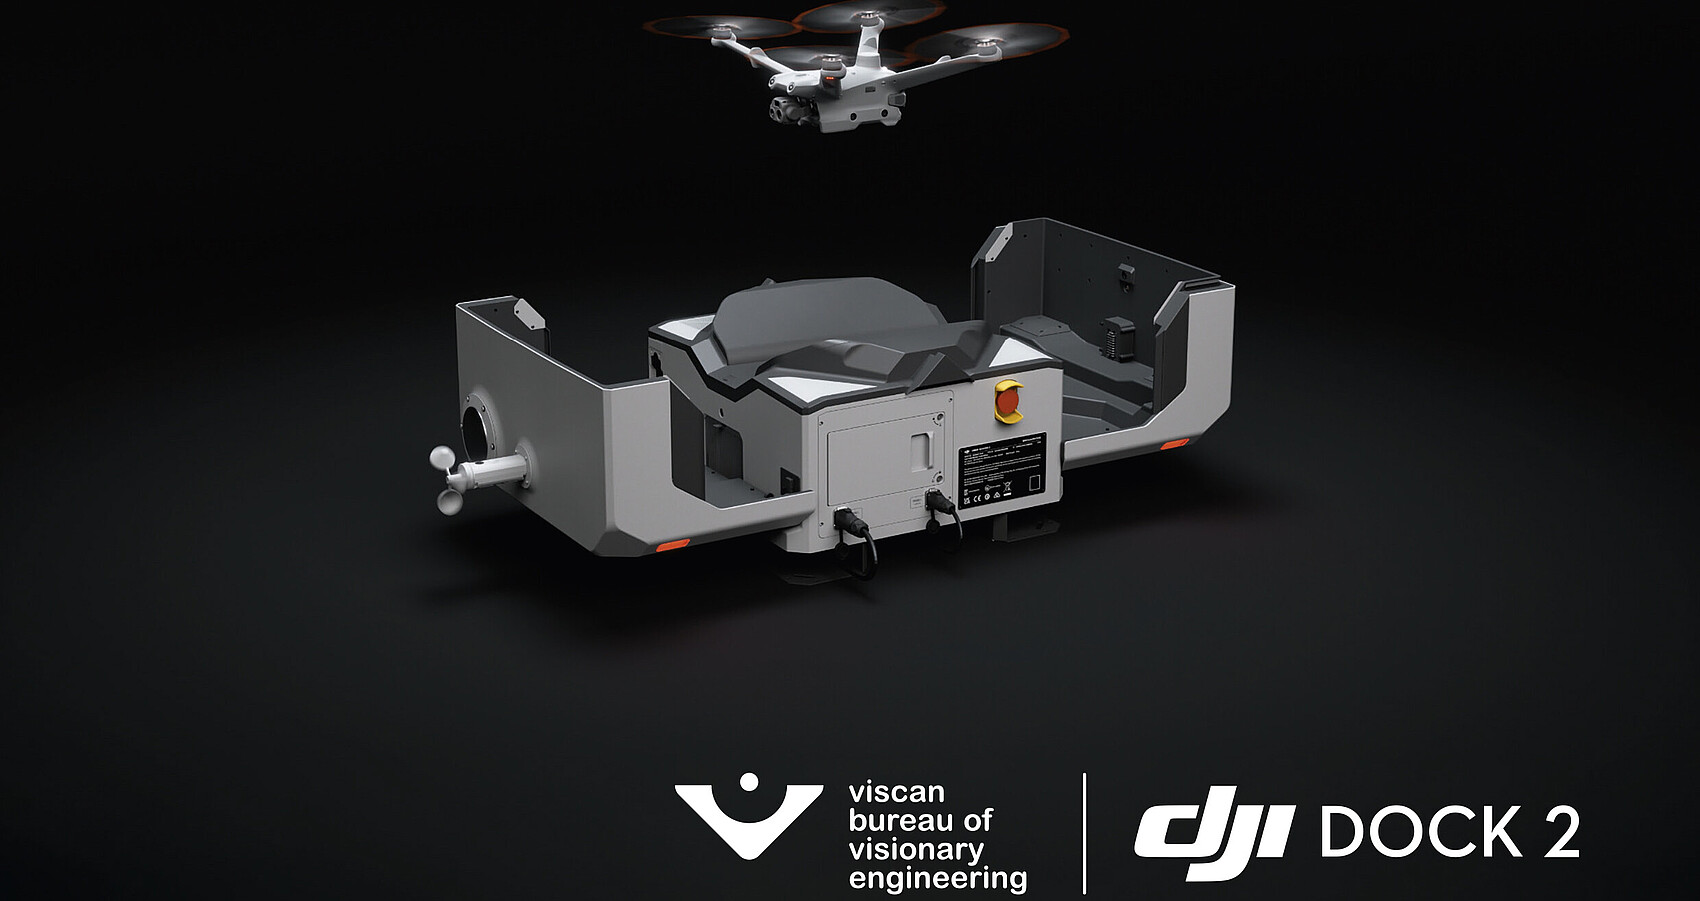 Bild zeigt eine Drohne auf schwarzem Hintergrund DJI dock2